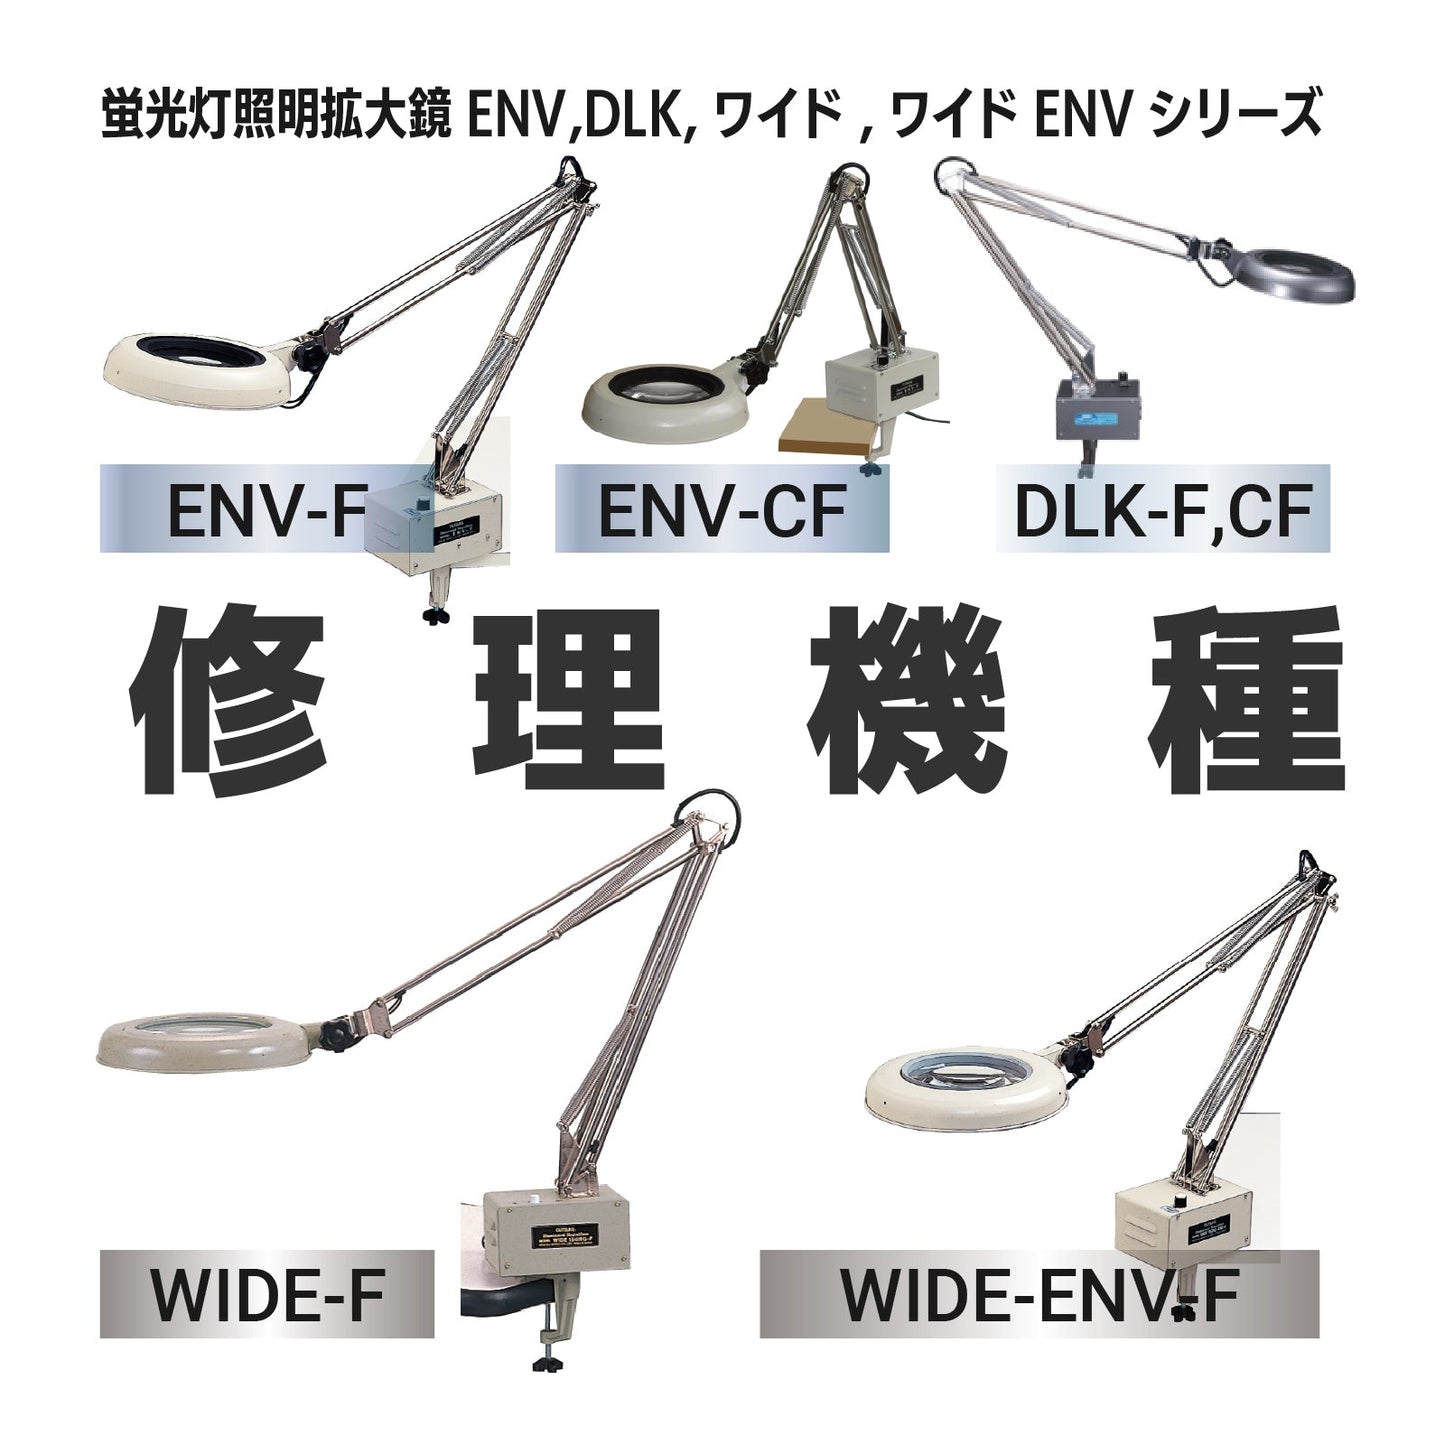 ENVシリーズ：ENV-F,CF / DLKシリーズ：DLK-F,CF / ワイド-F・ワイド-ENV-Fシリーズ：ワイド-F,ワイドｰENV-F